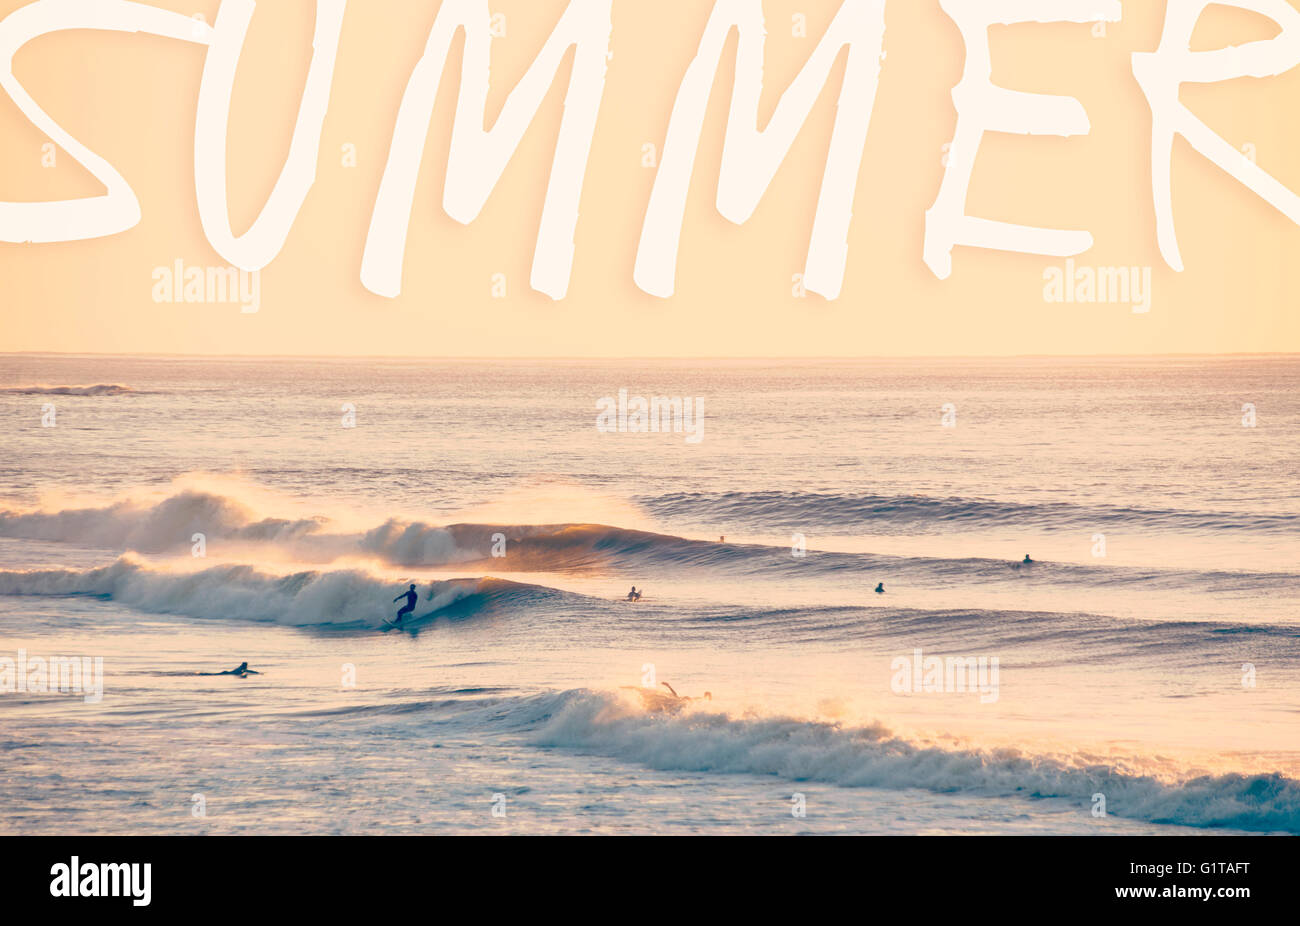 Estate tipografia su vintage paesaggio del mare. Persone surf sulla spiaggia surf sfondo. Foto Stock